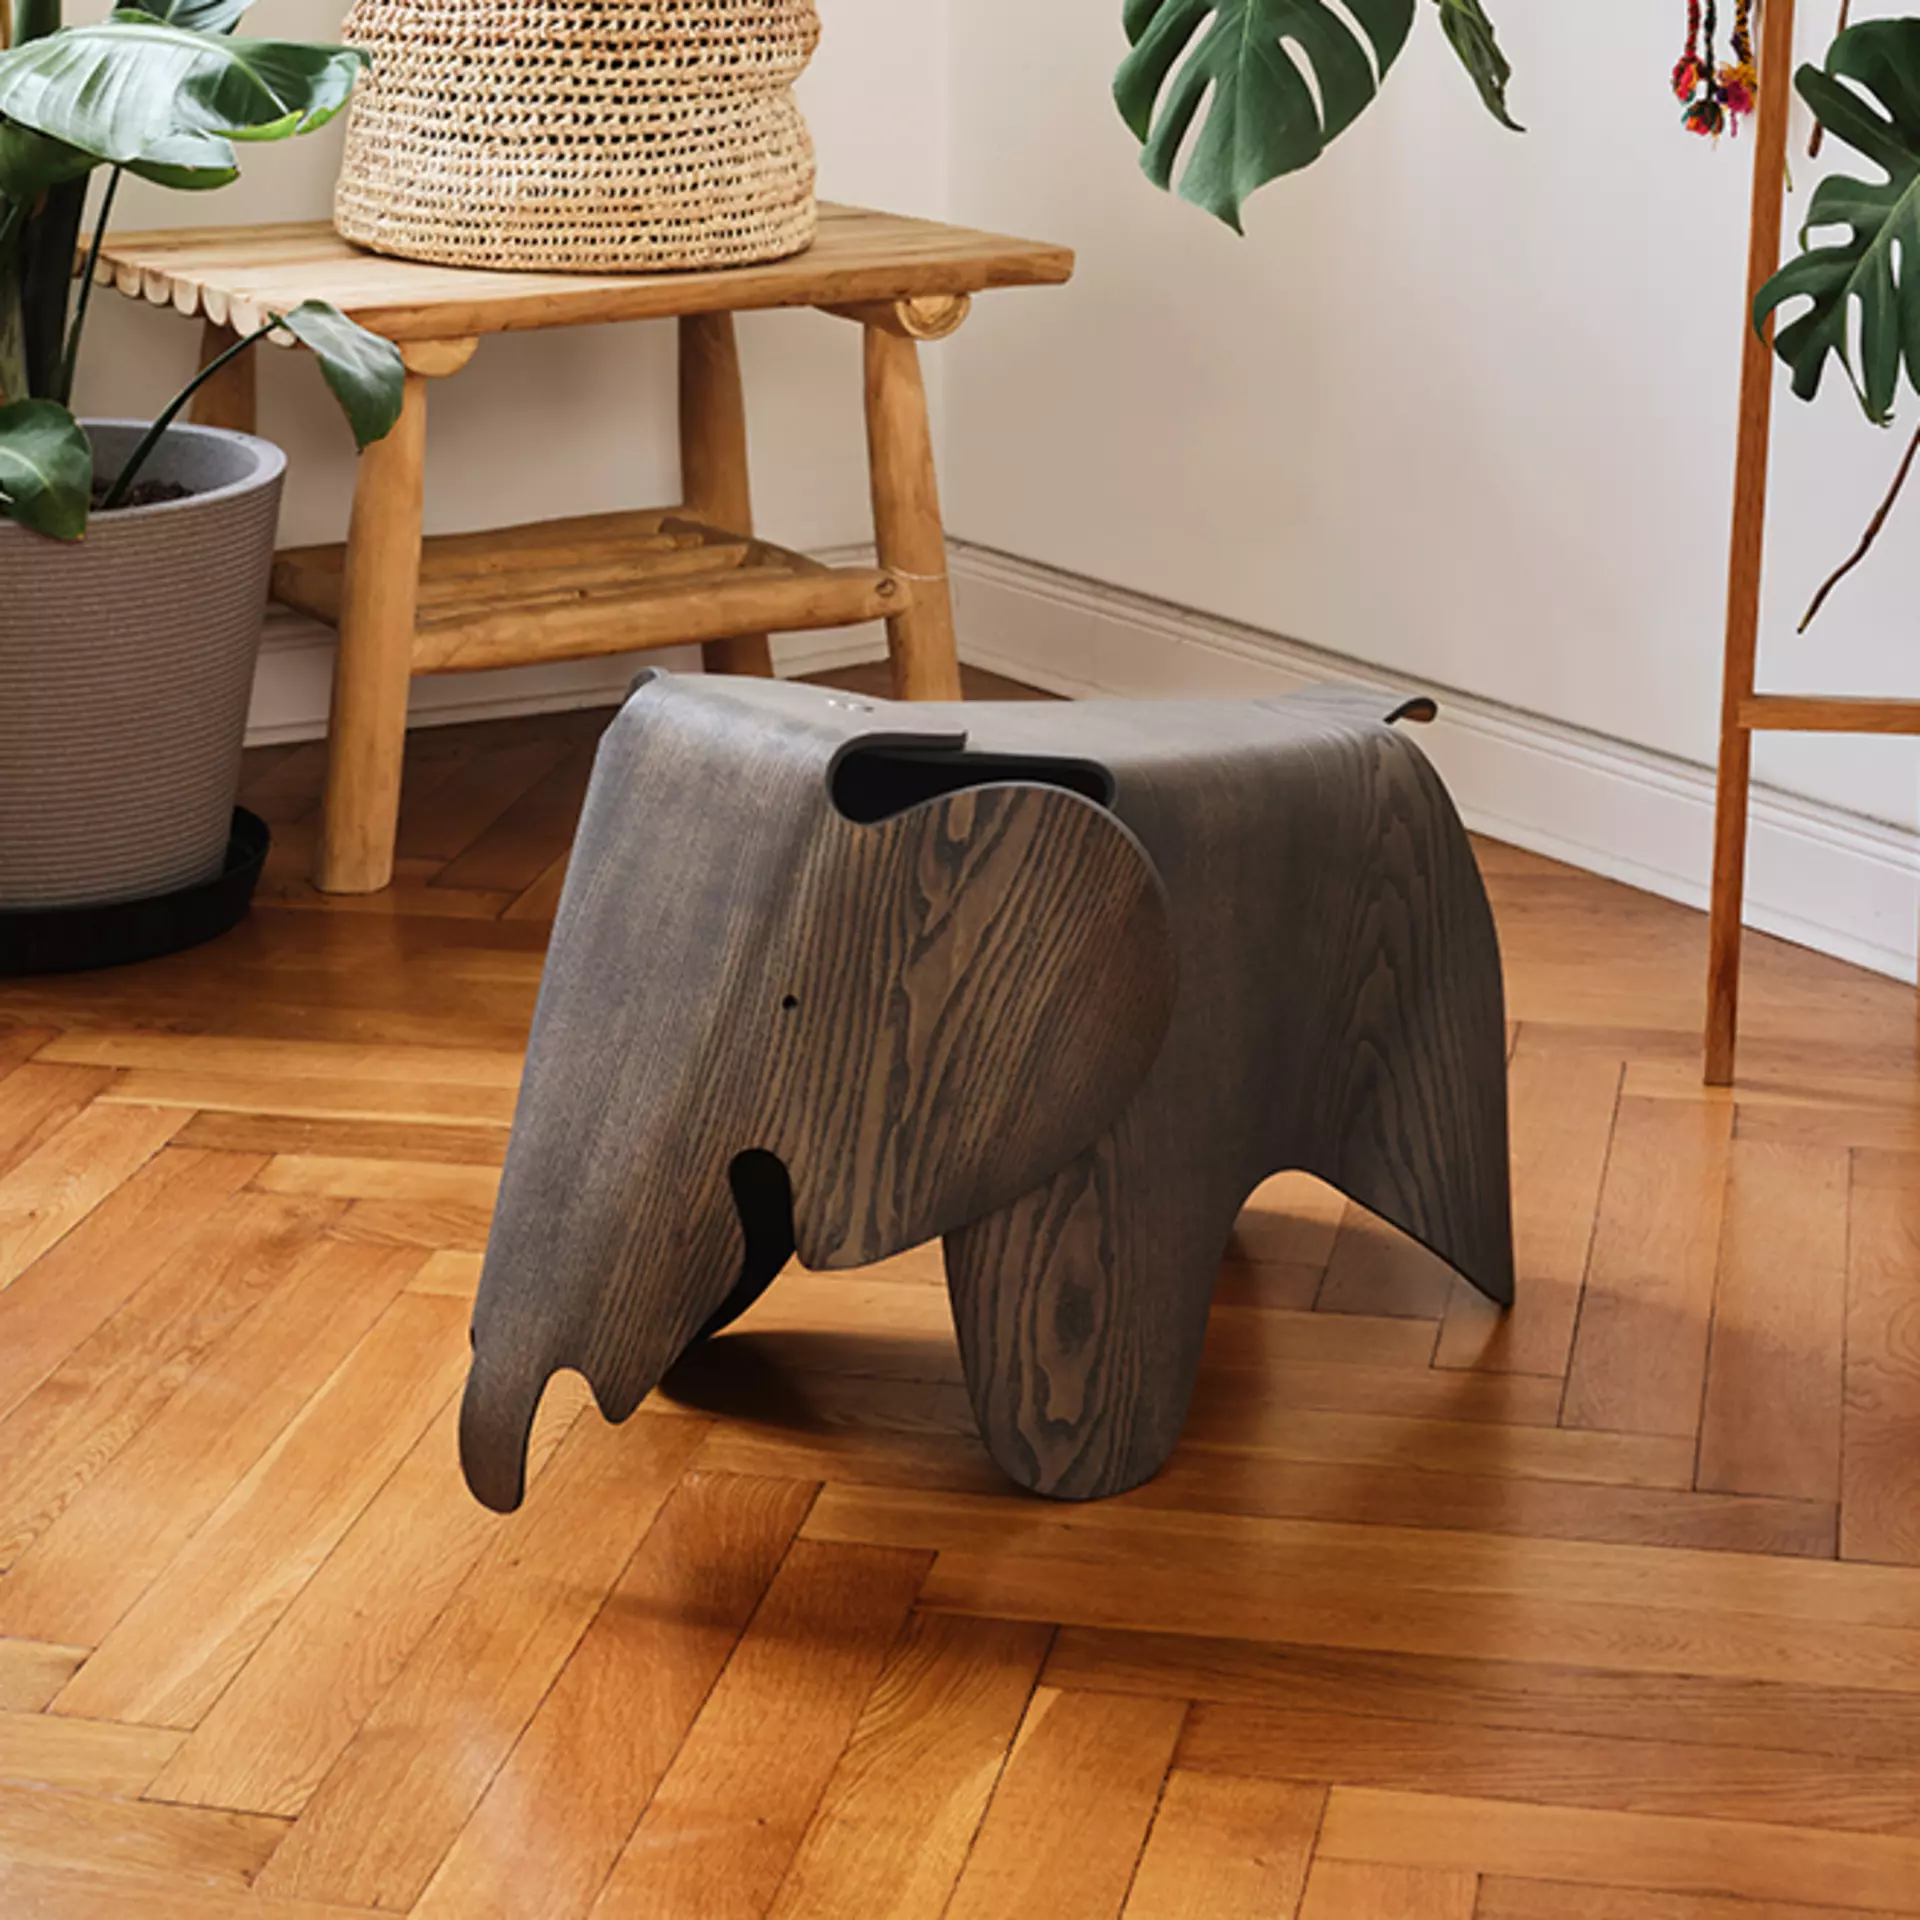 Der ikonische Eames Elephant Plywood von Vitra